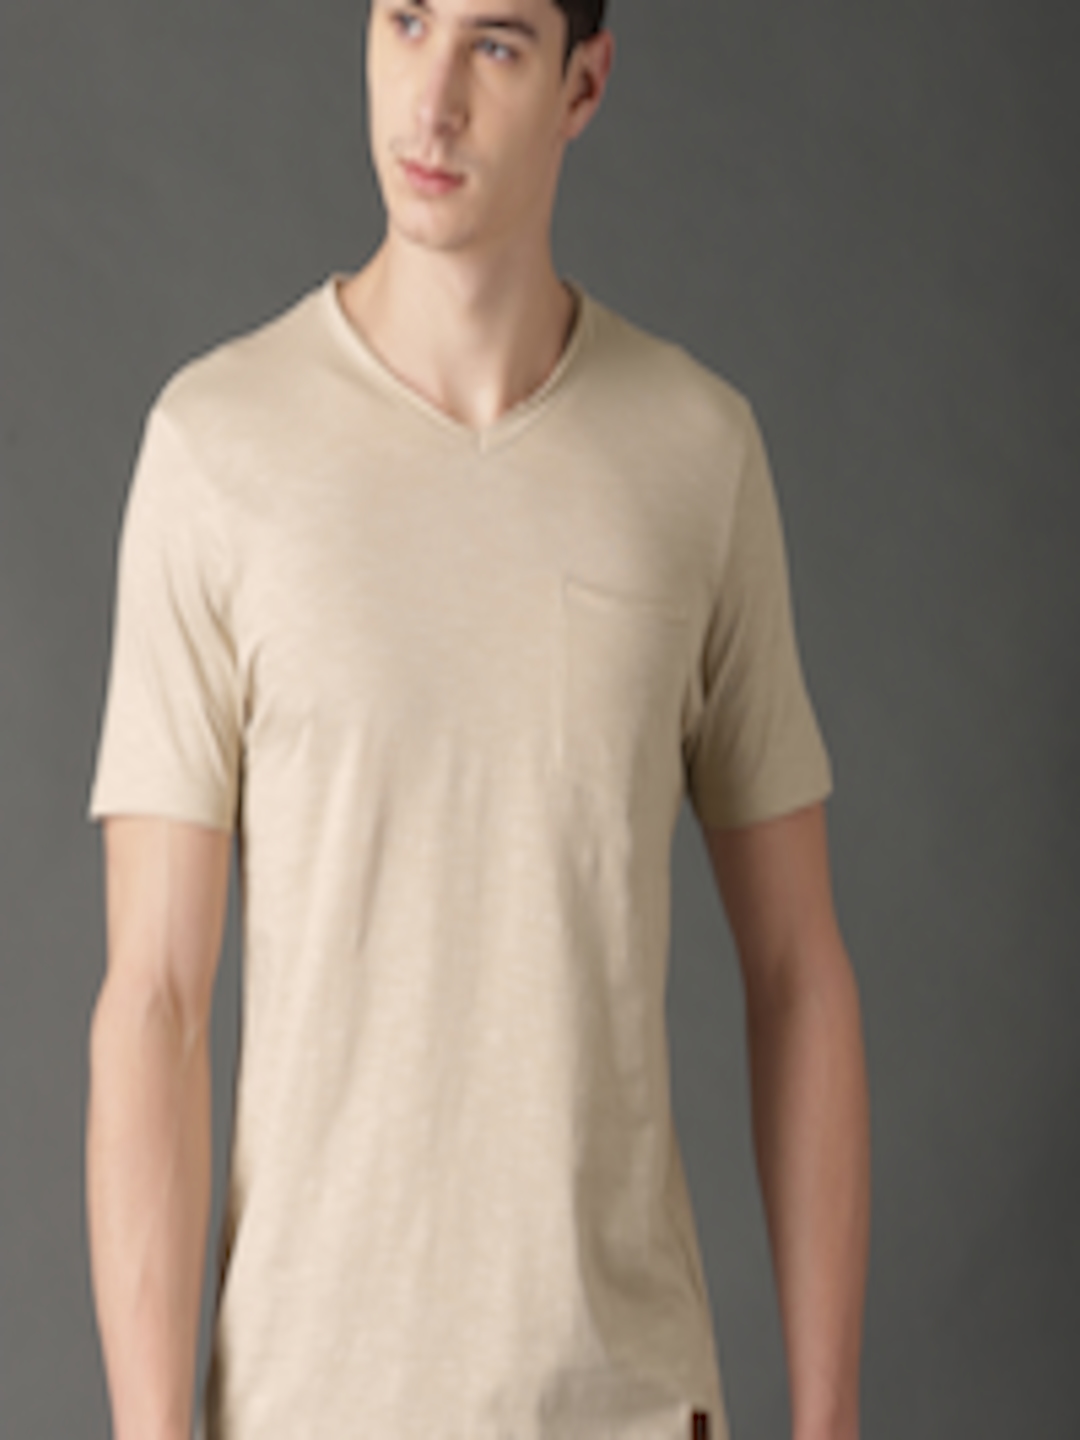 Buy Roadster Men Beige Solid V Neck T Shirt - Tshirts for Men 2306178 ...